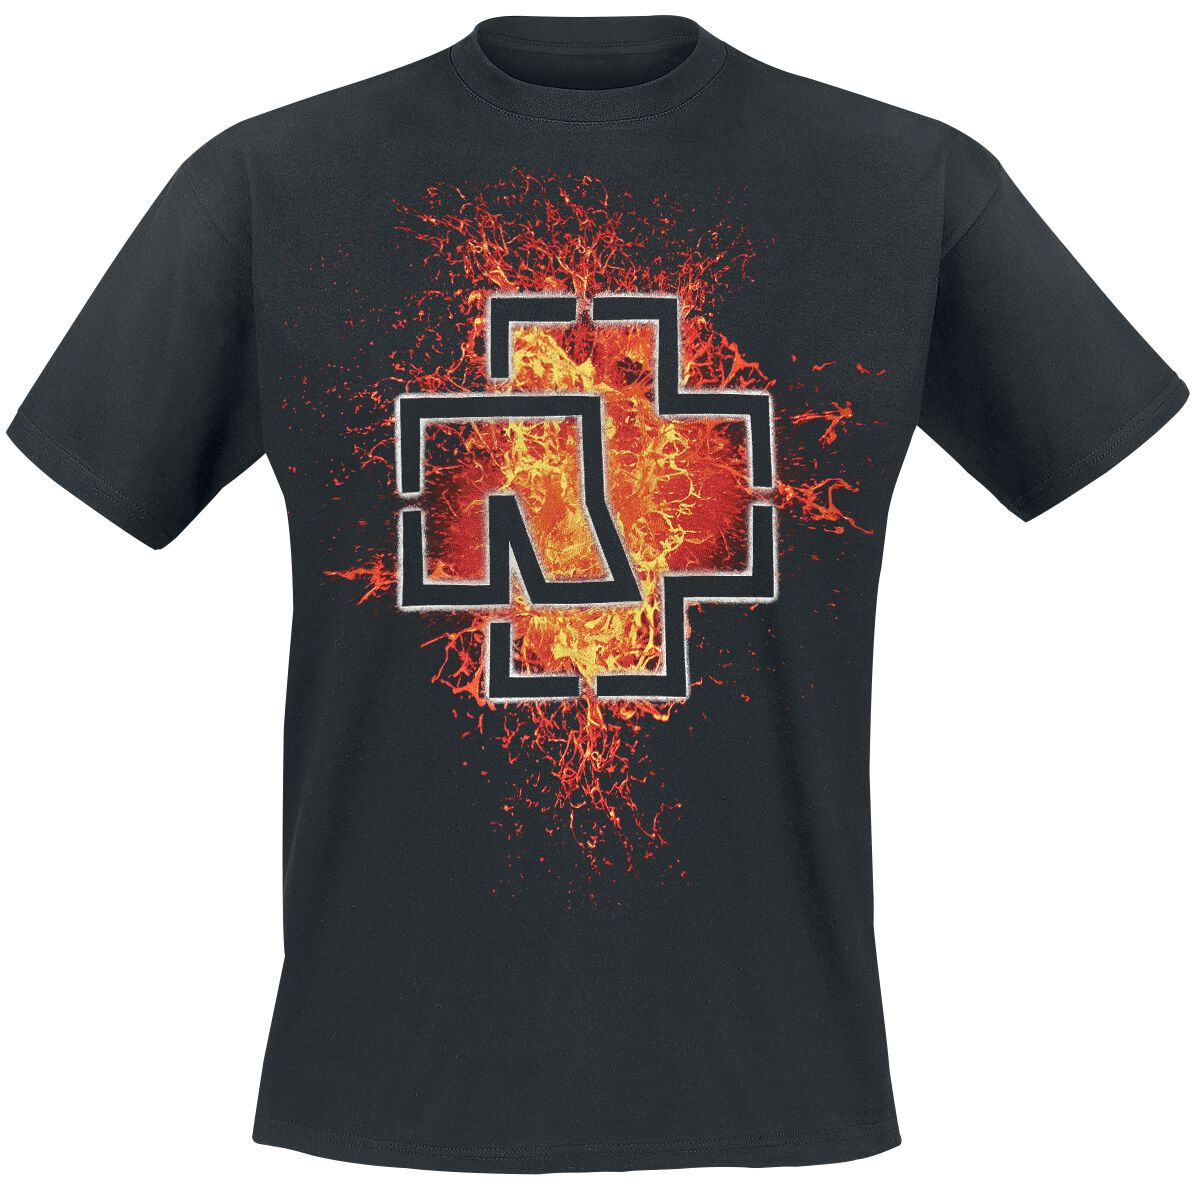 Rammstein T-Shirt - Lava Logo - 4XL - für Männer - Größe 4XL - schwarz  - Lizenziertes Merchandise!